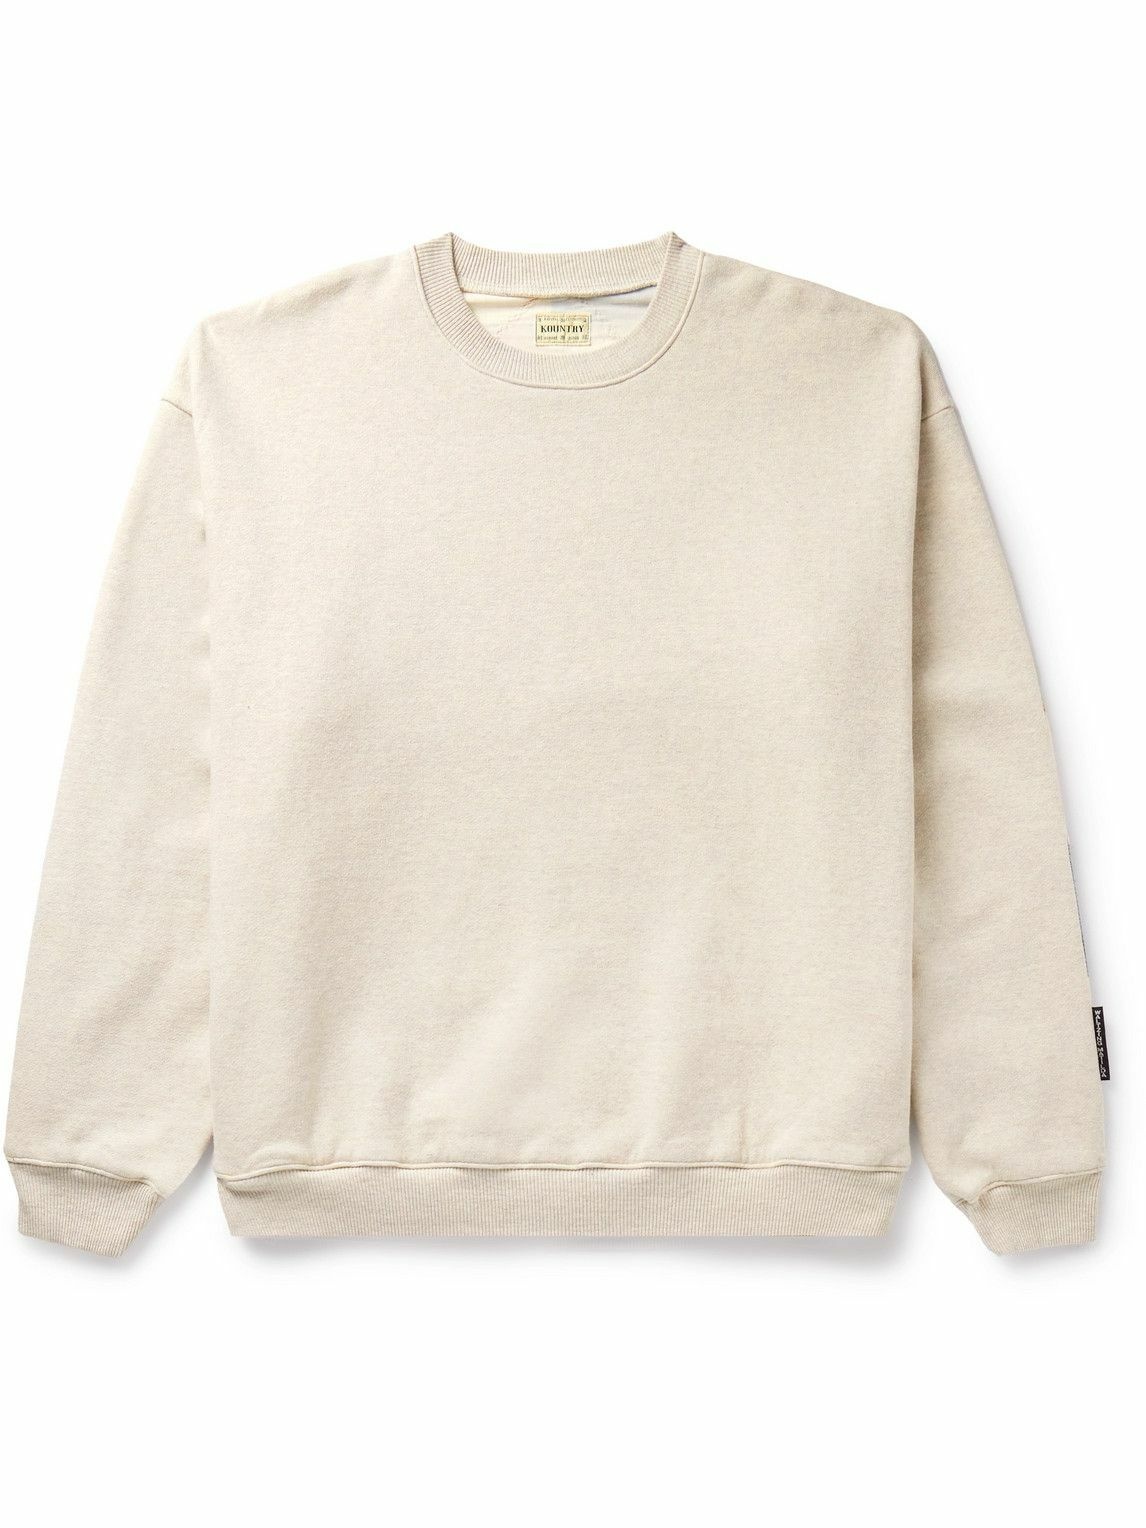 Photo: KAPITAL - Patchwork Cotton-Jersey Sweatshirt - Neutrals